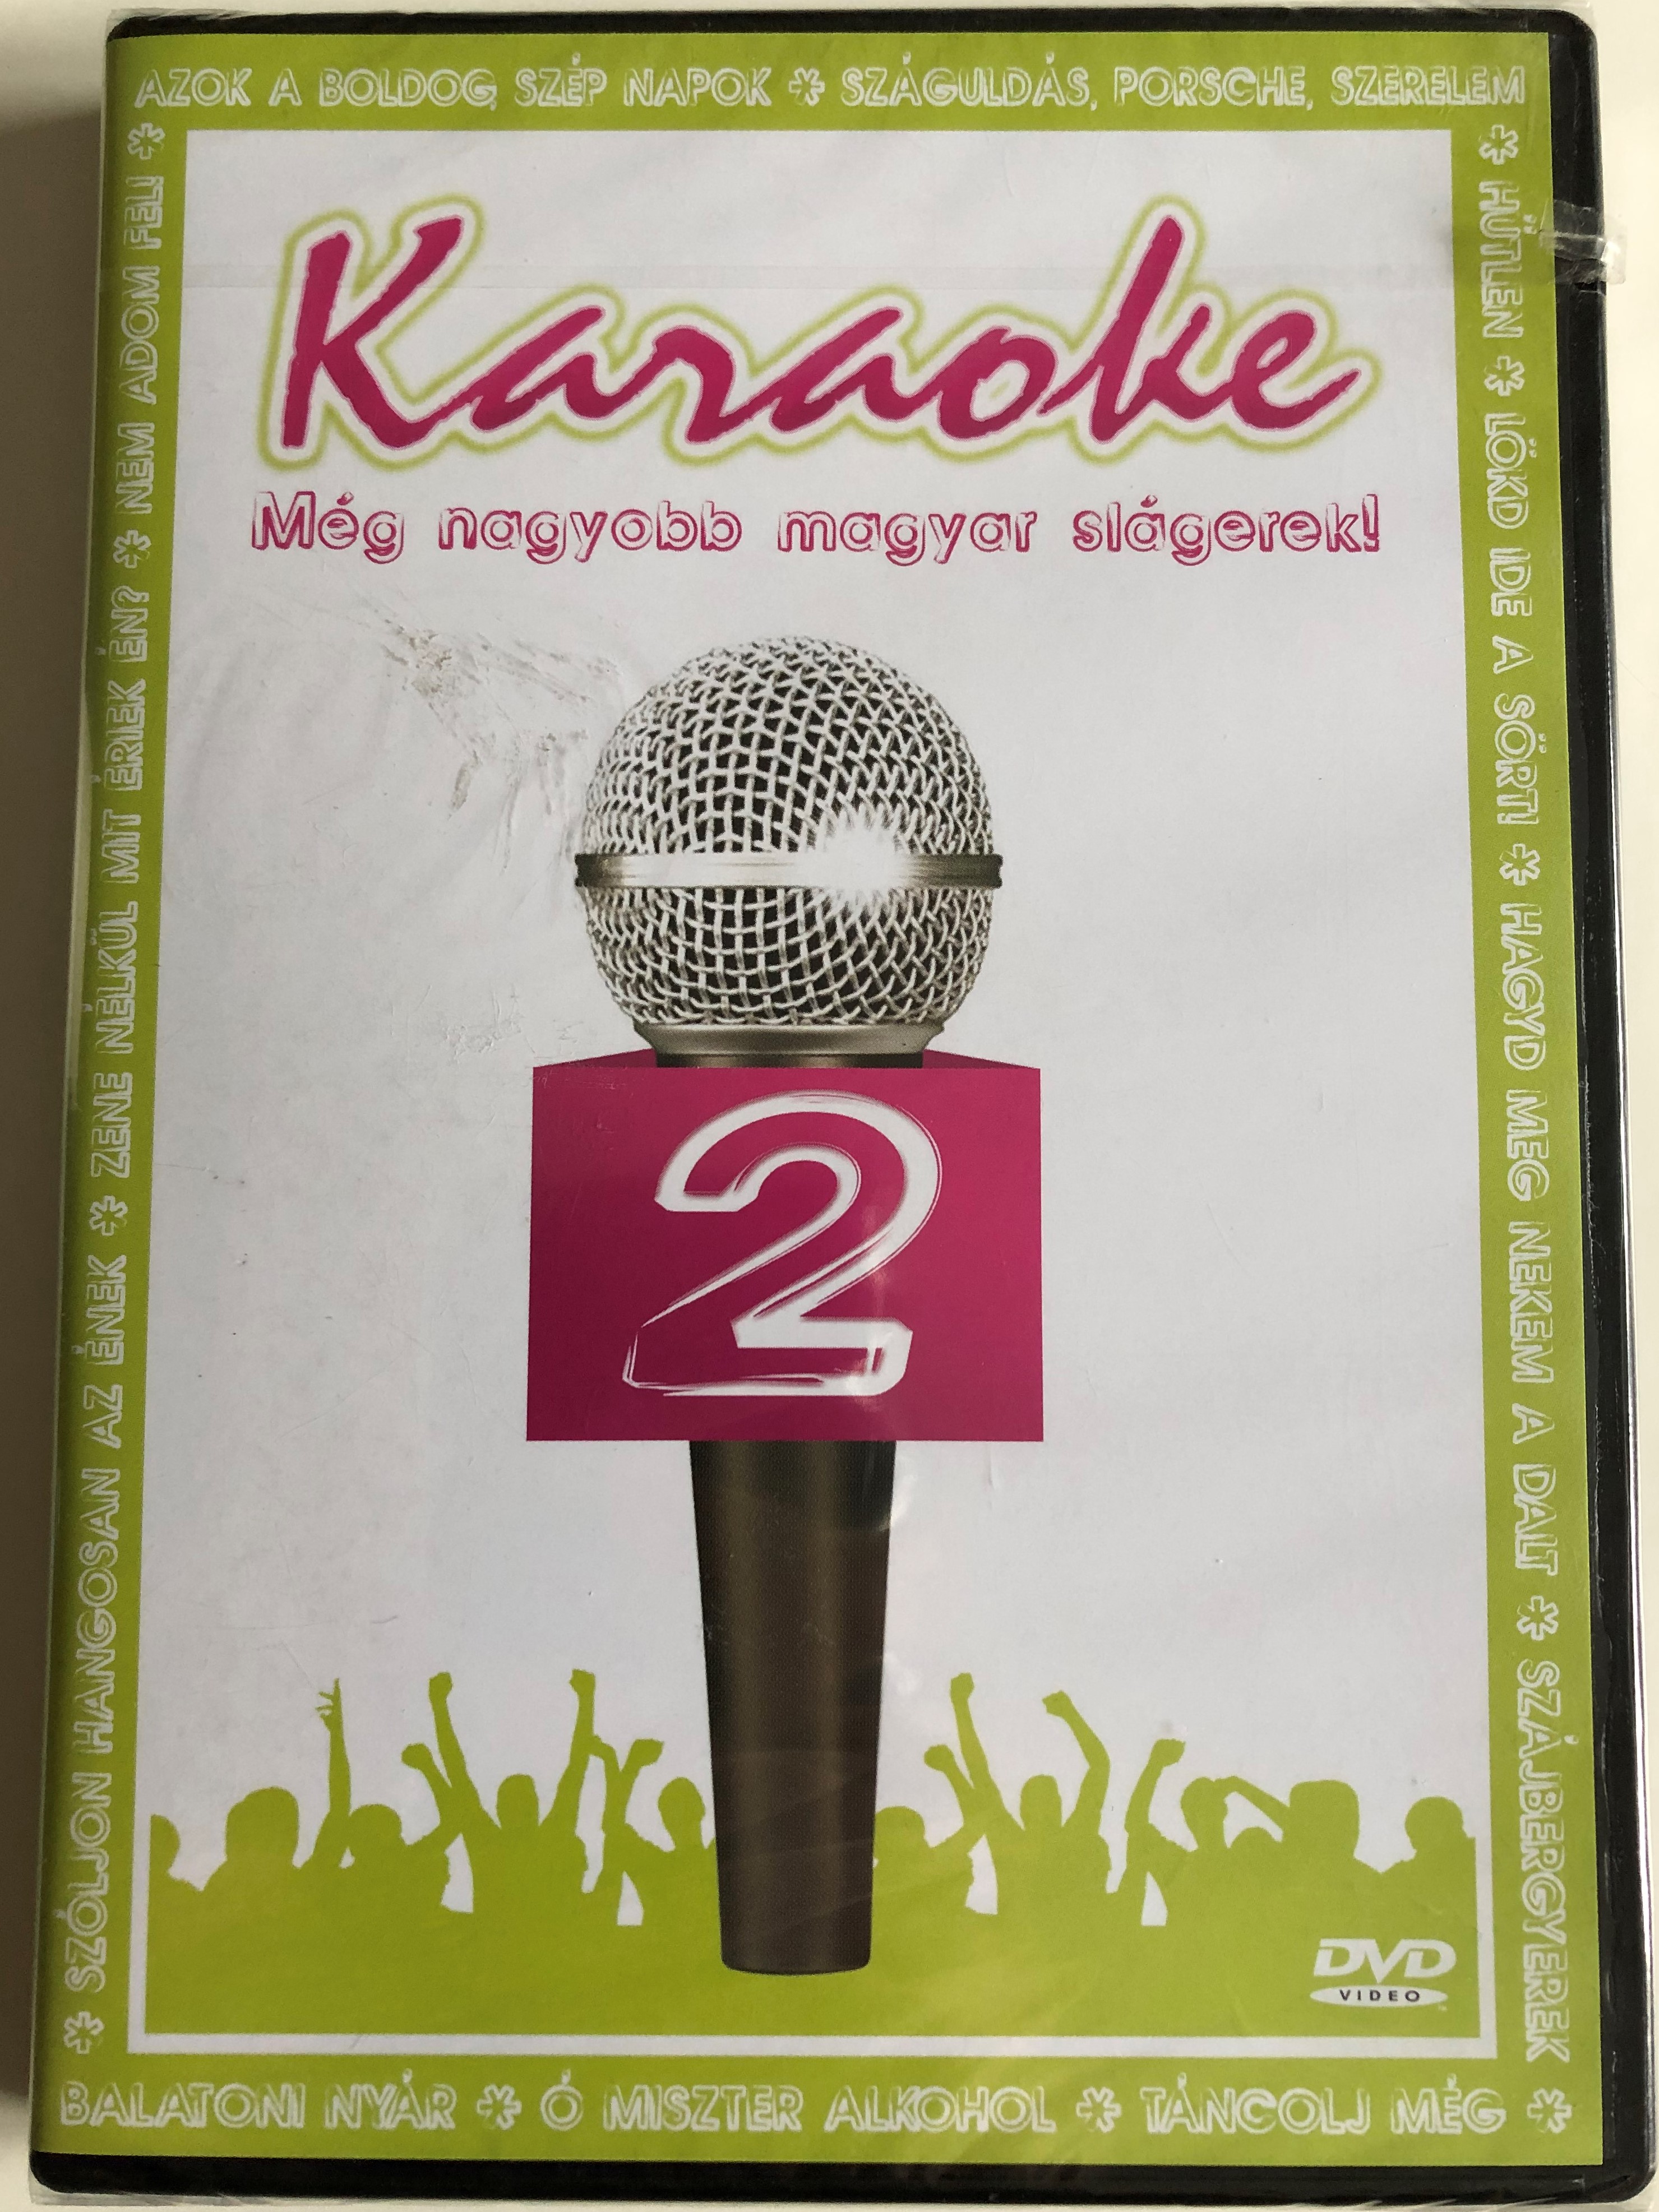 karaoke-2-dvd-2006-m-g-nagyobb-magyar-sl-gerek-1.jpg